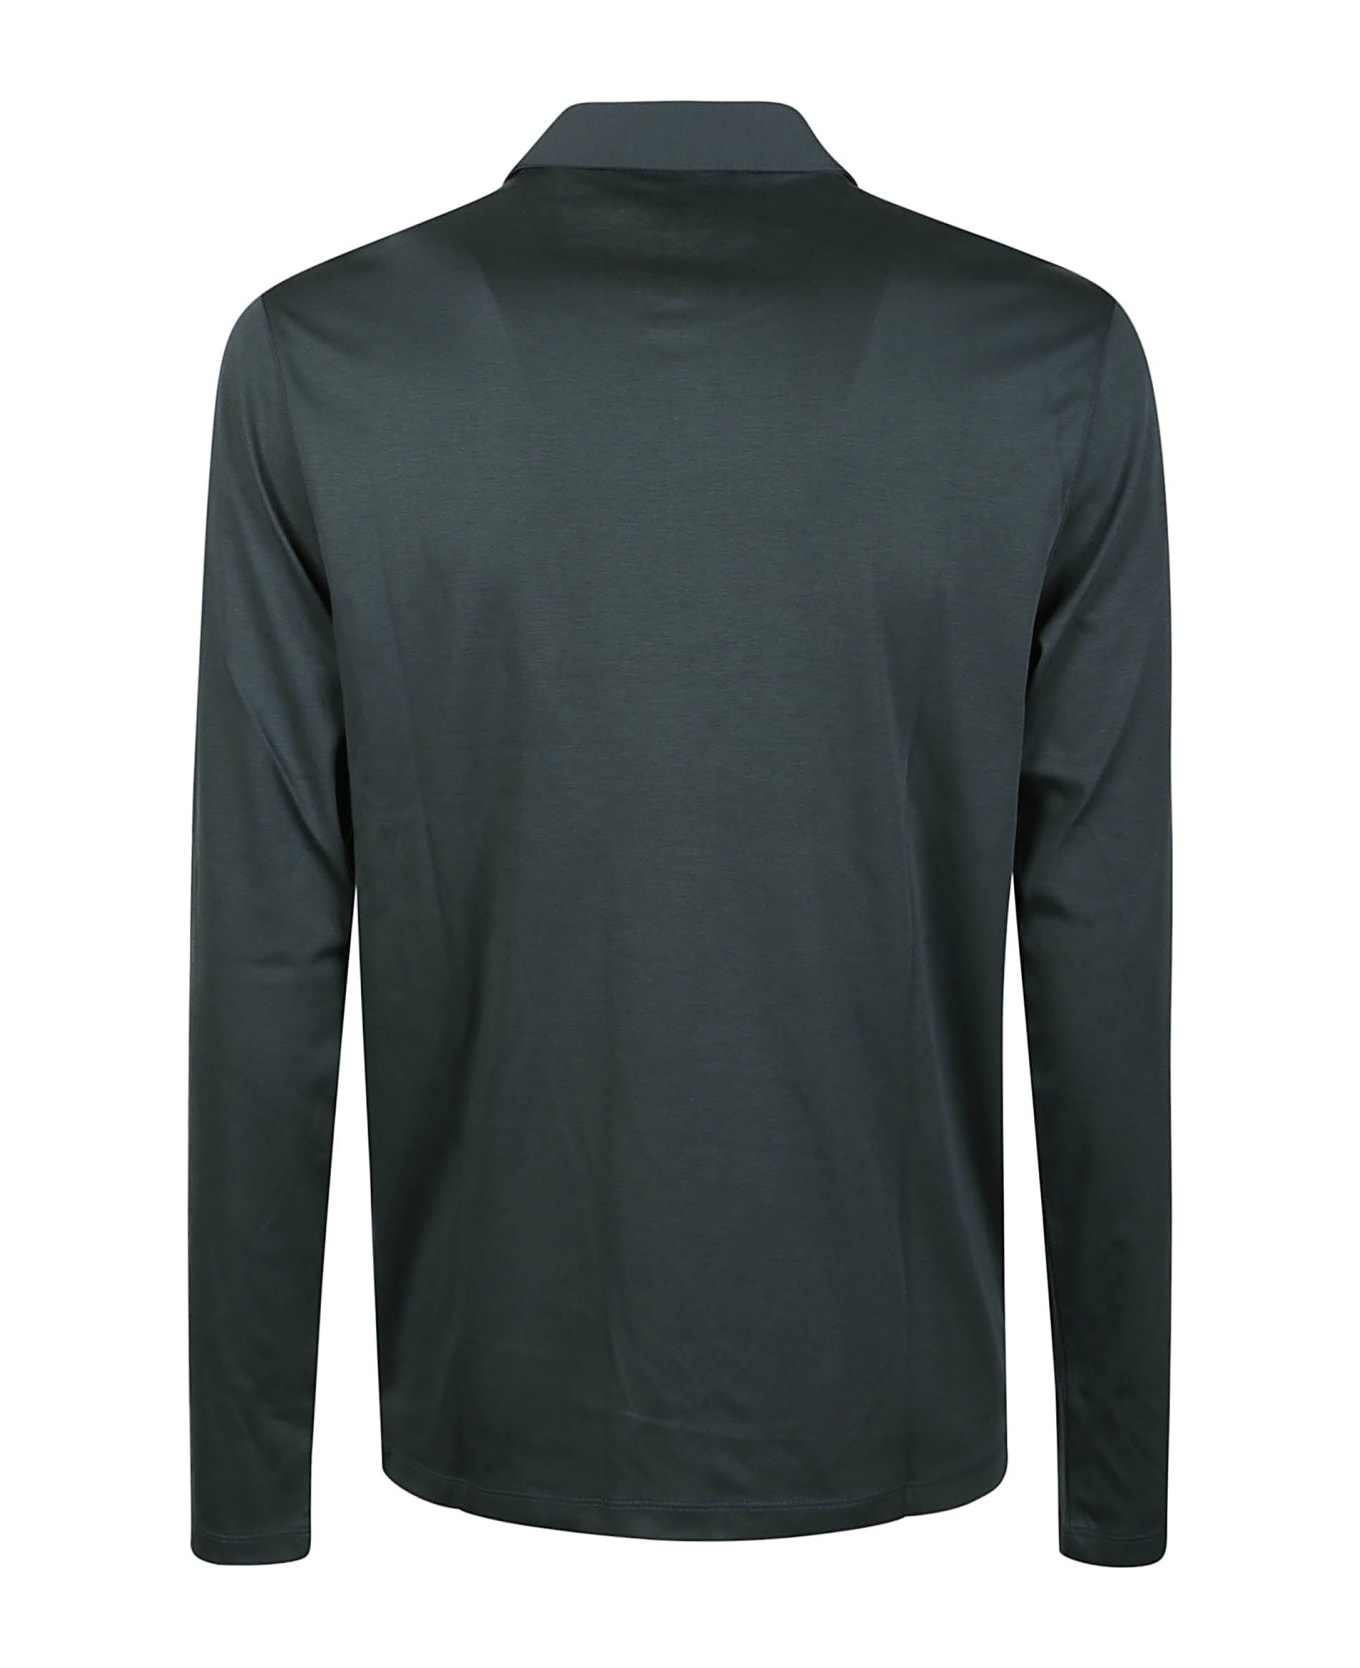 Michael Kors Long Sleeve Sleek Polo Shirt - Jade